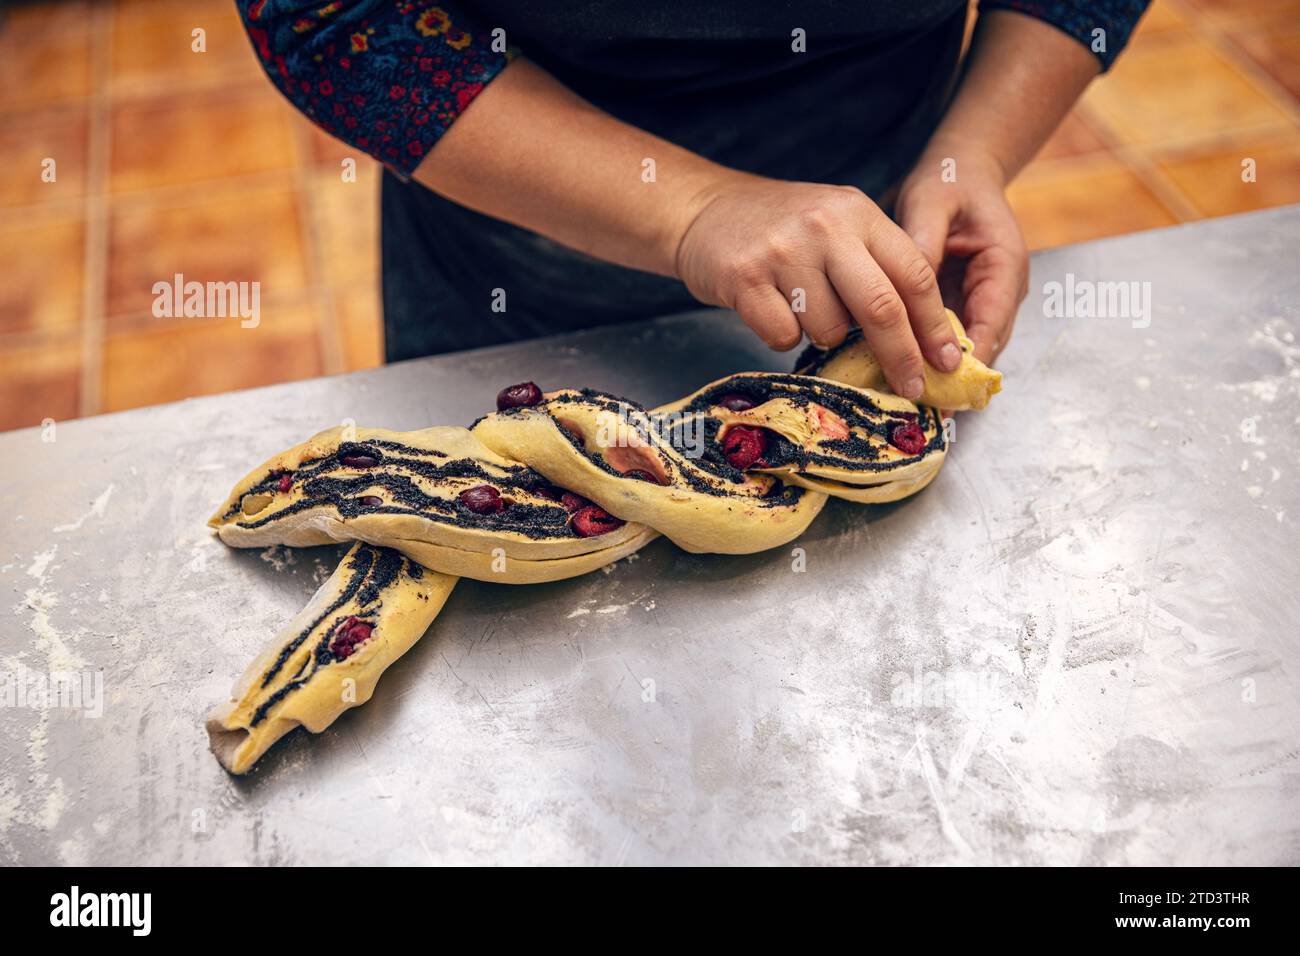 Mains féminines préparant une babka de graines de pavot. Gâteau juif traditionnel ressemblant à du pain tourbillonné de graines de pavot et de cerise Banque D'Images